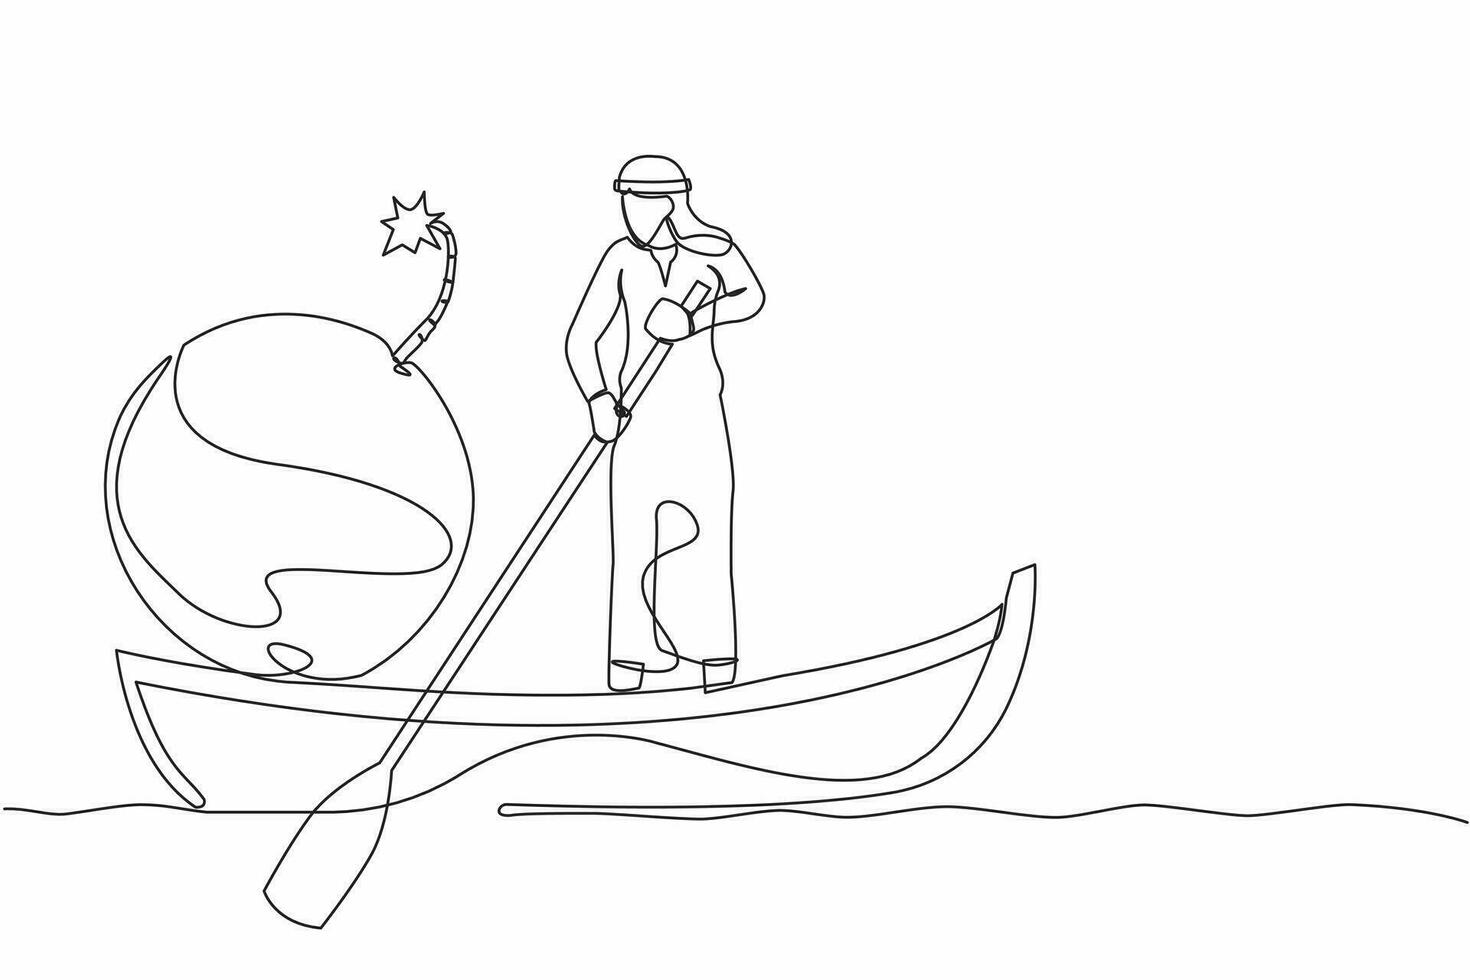 soltero continuo línea dibujo árabe empresario navegación lejos en barco con bomba. oficina trabajador despedido desde empresas debido a explotando mundo financiero crisis. uno línea gráfico diseño vector ilustración